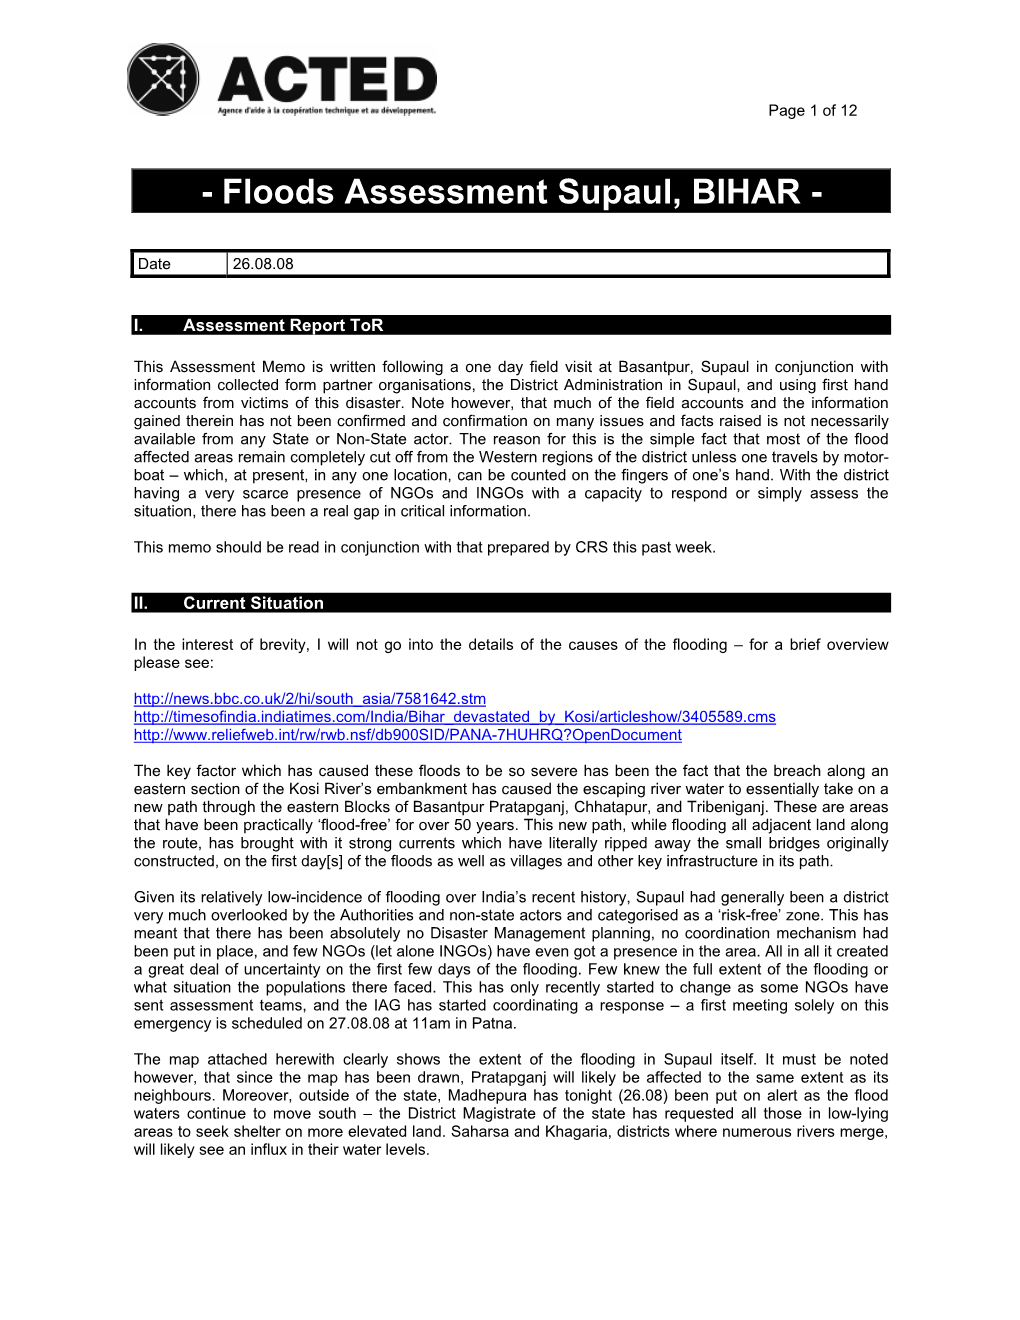 Floods Assessment Supaul, BIHAR